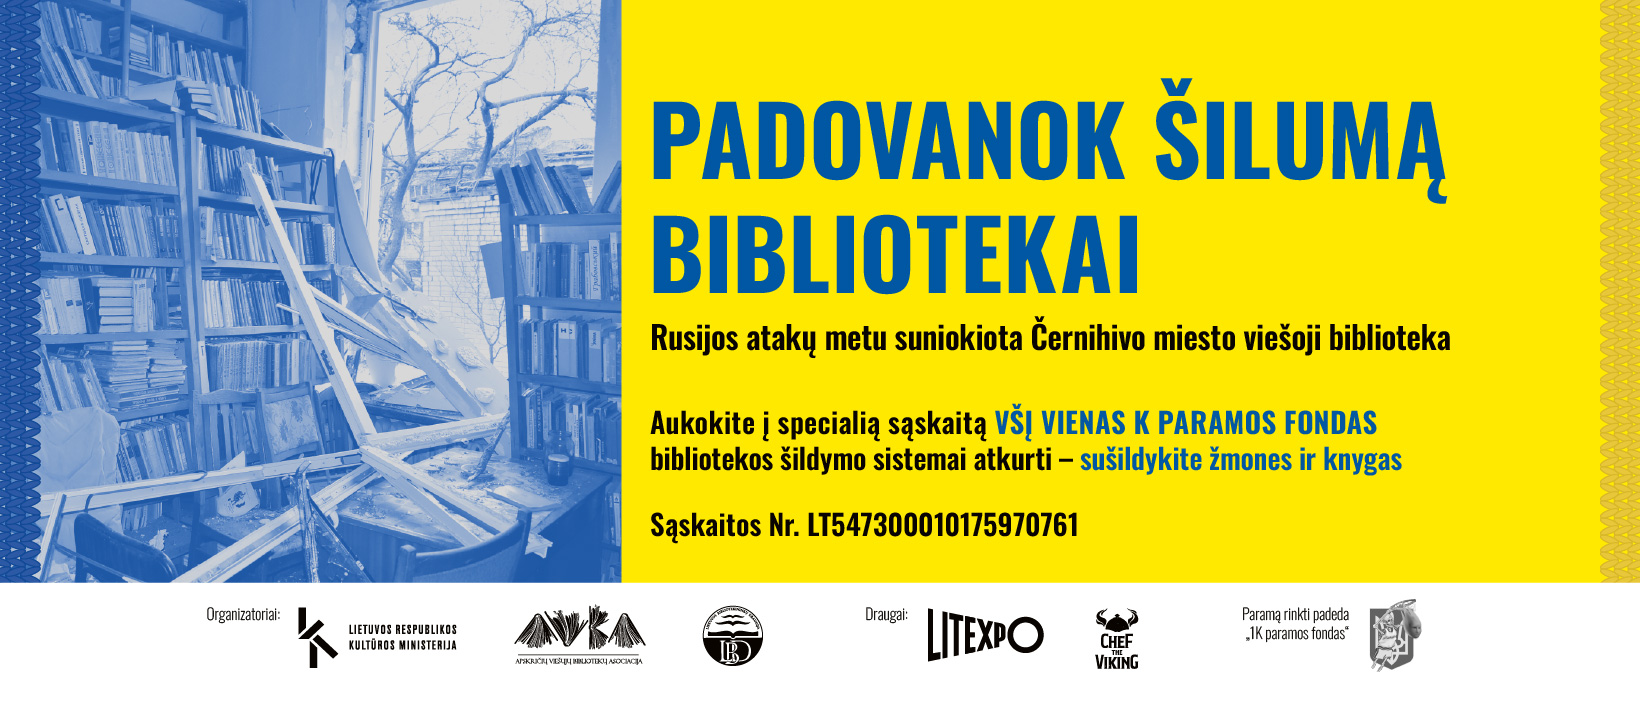 Akcija „Padovanok šilumą bibliotekai“ – padėkime išsaugoti Ukrainos kultūros objektus